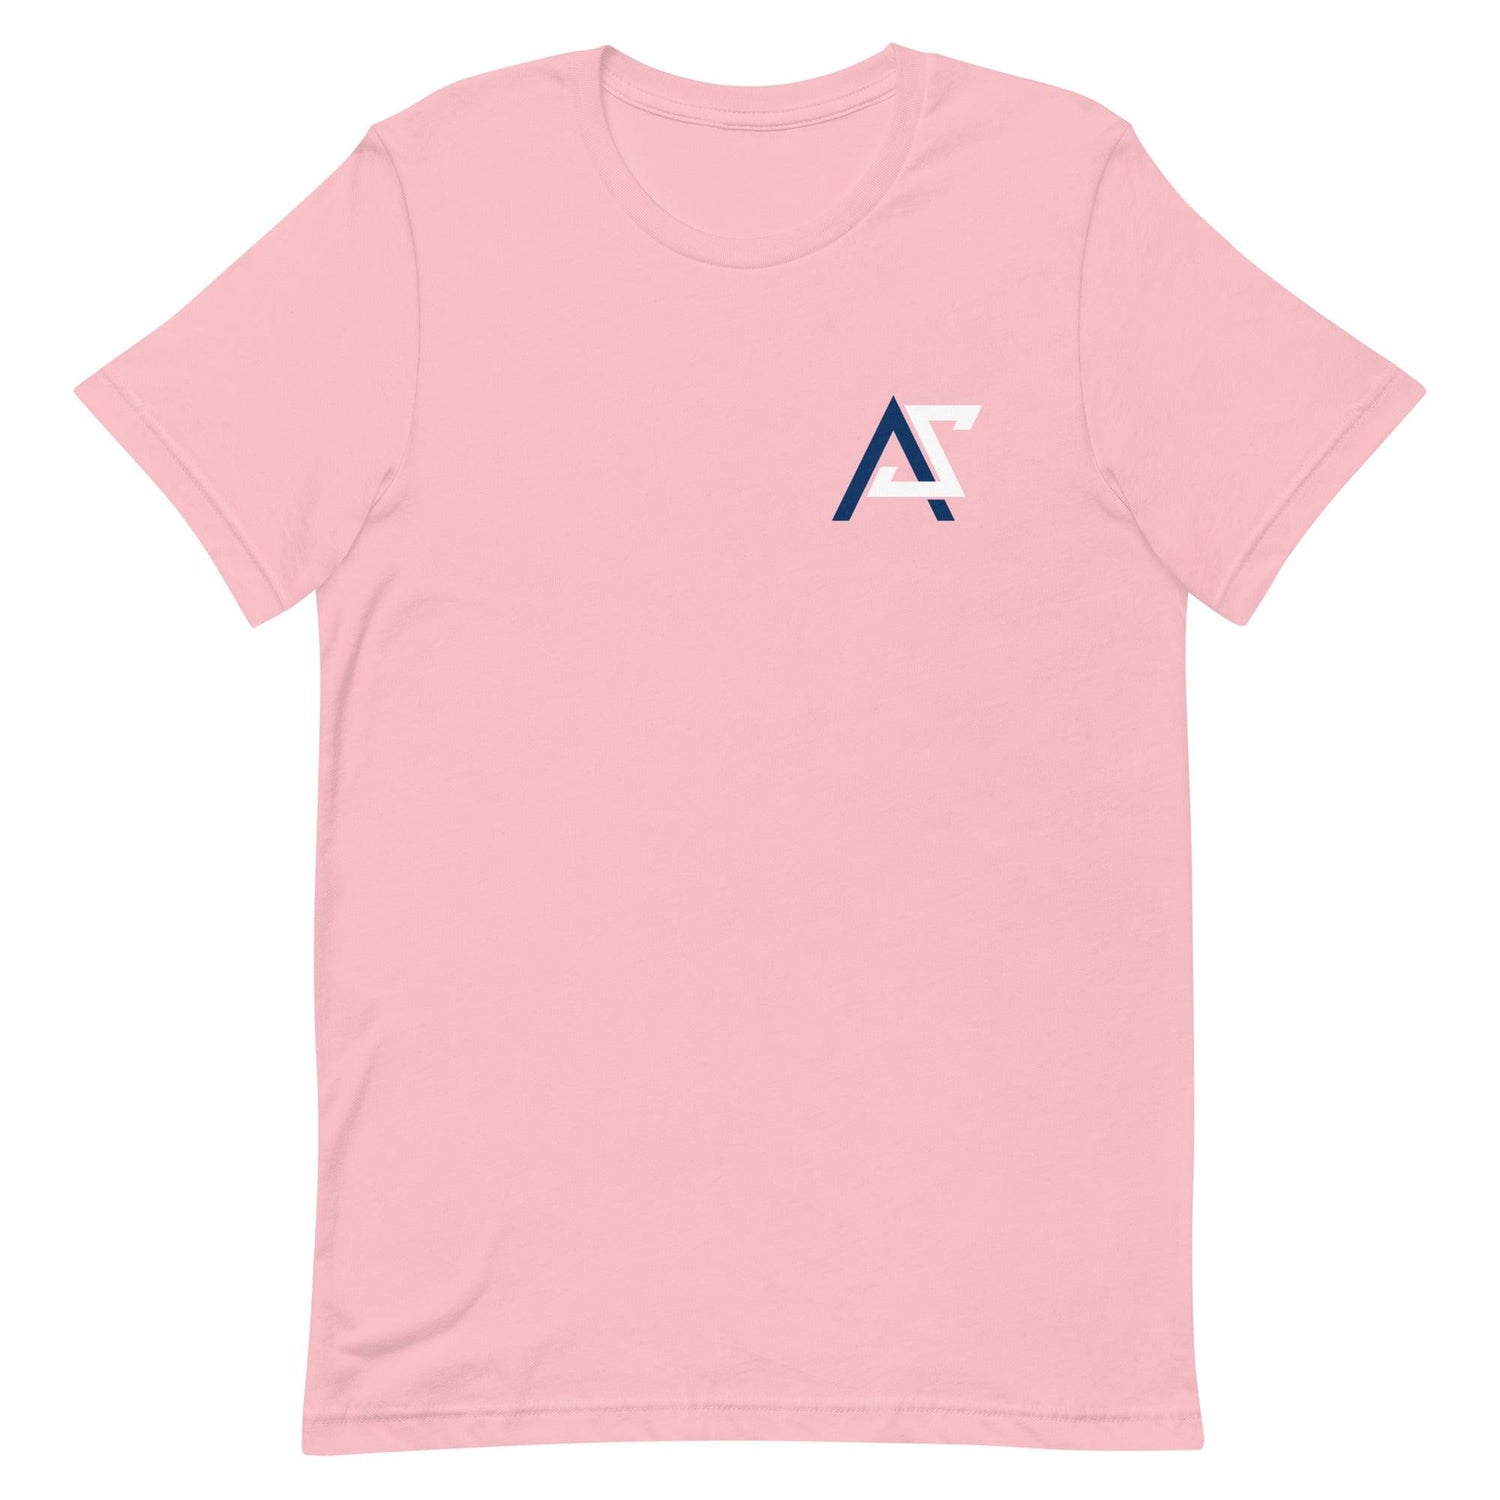 Adrianna Smith "Essential" t-shirt - Fan Arch